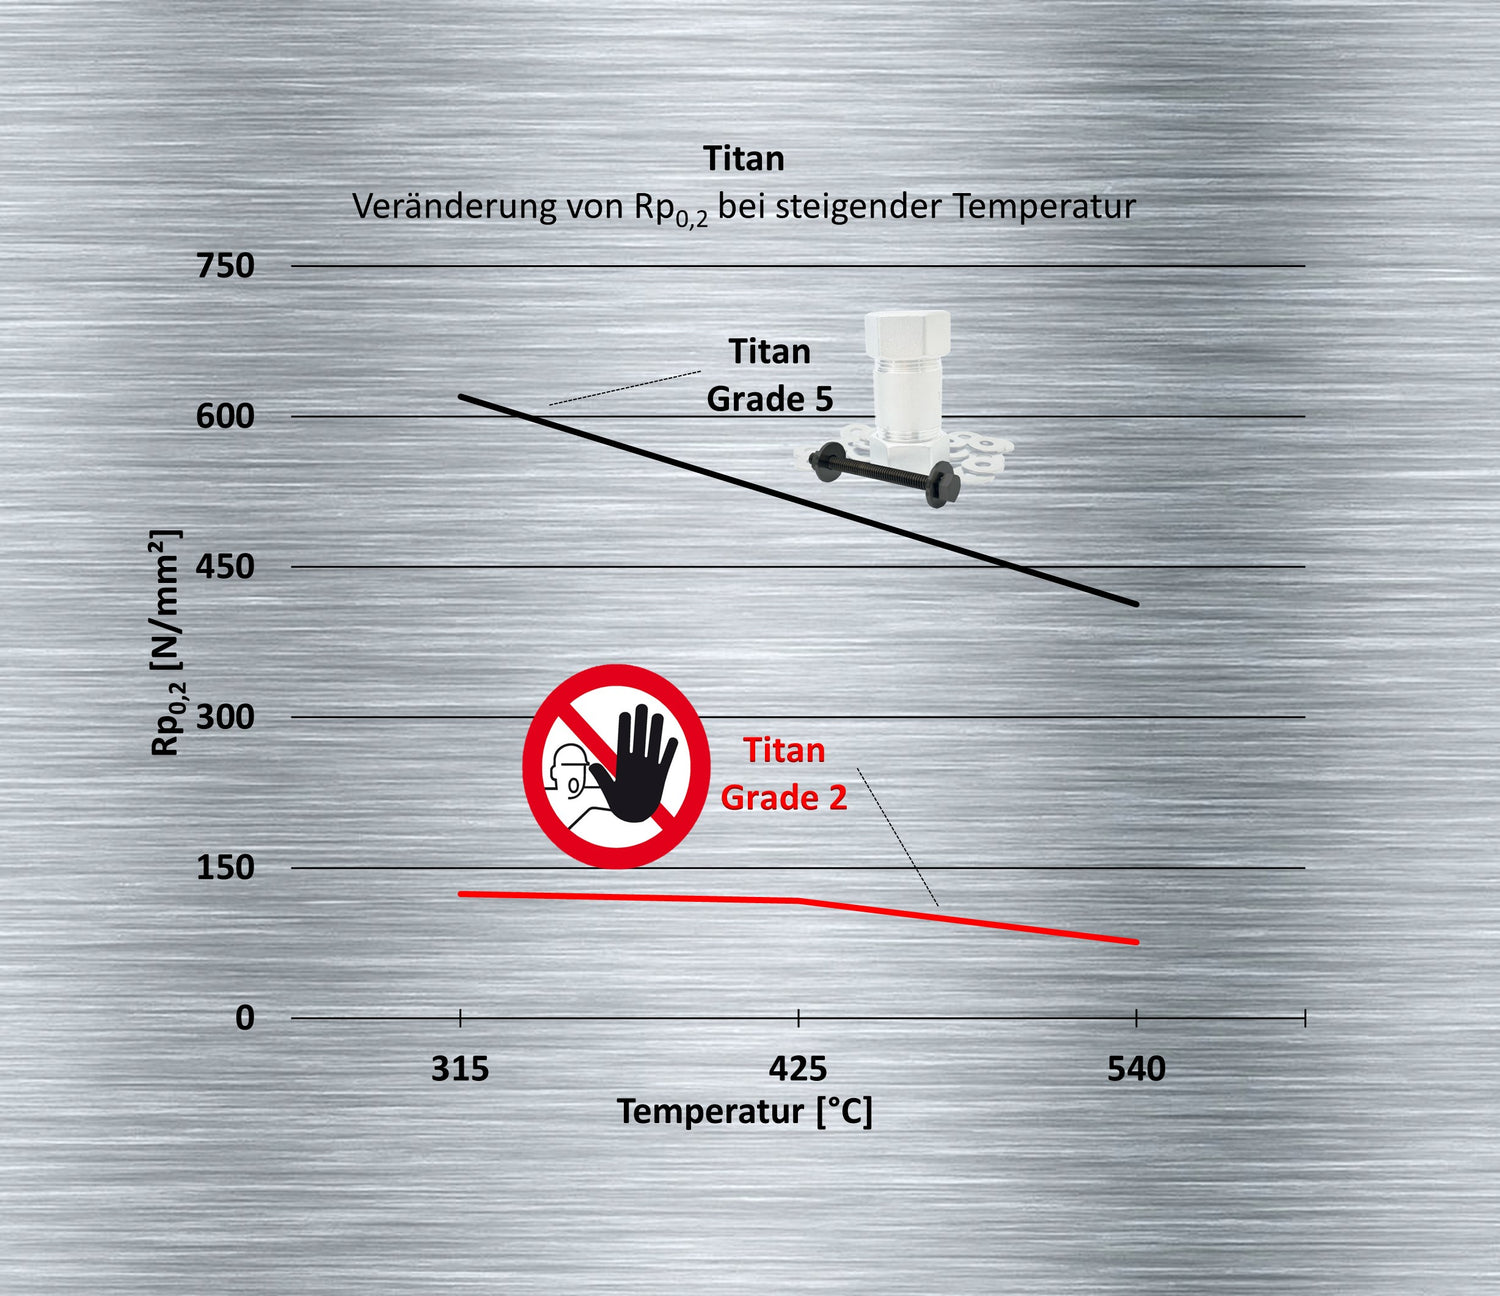 Titan Streckgrenze mit steigender Temperatur: Titan Grade 5 > Titan Grade 2